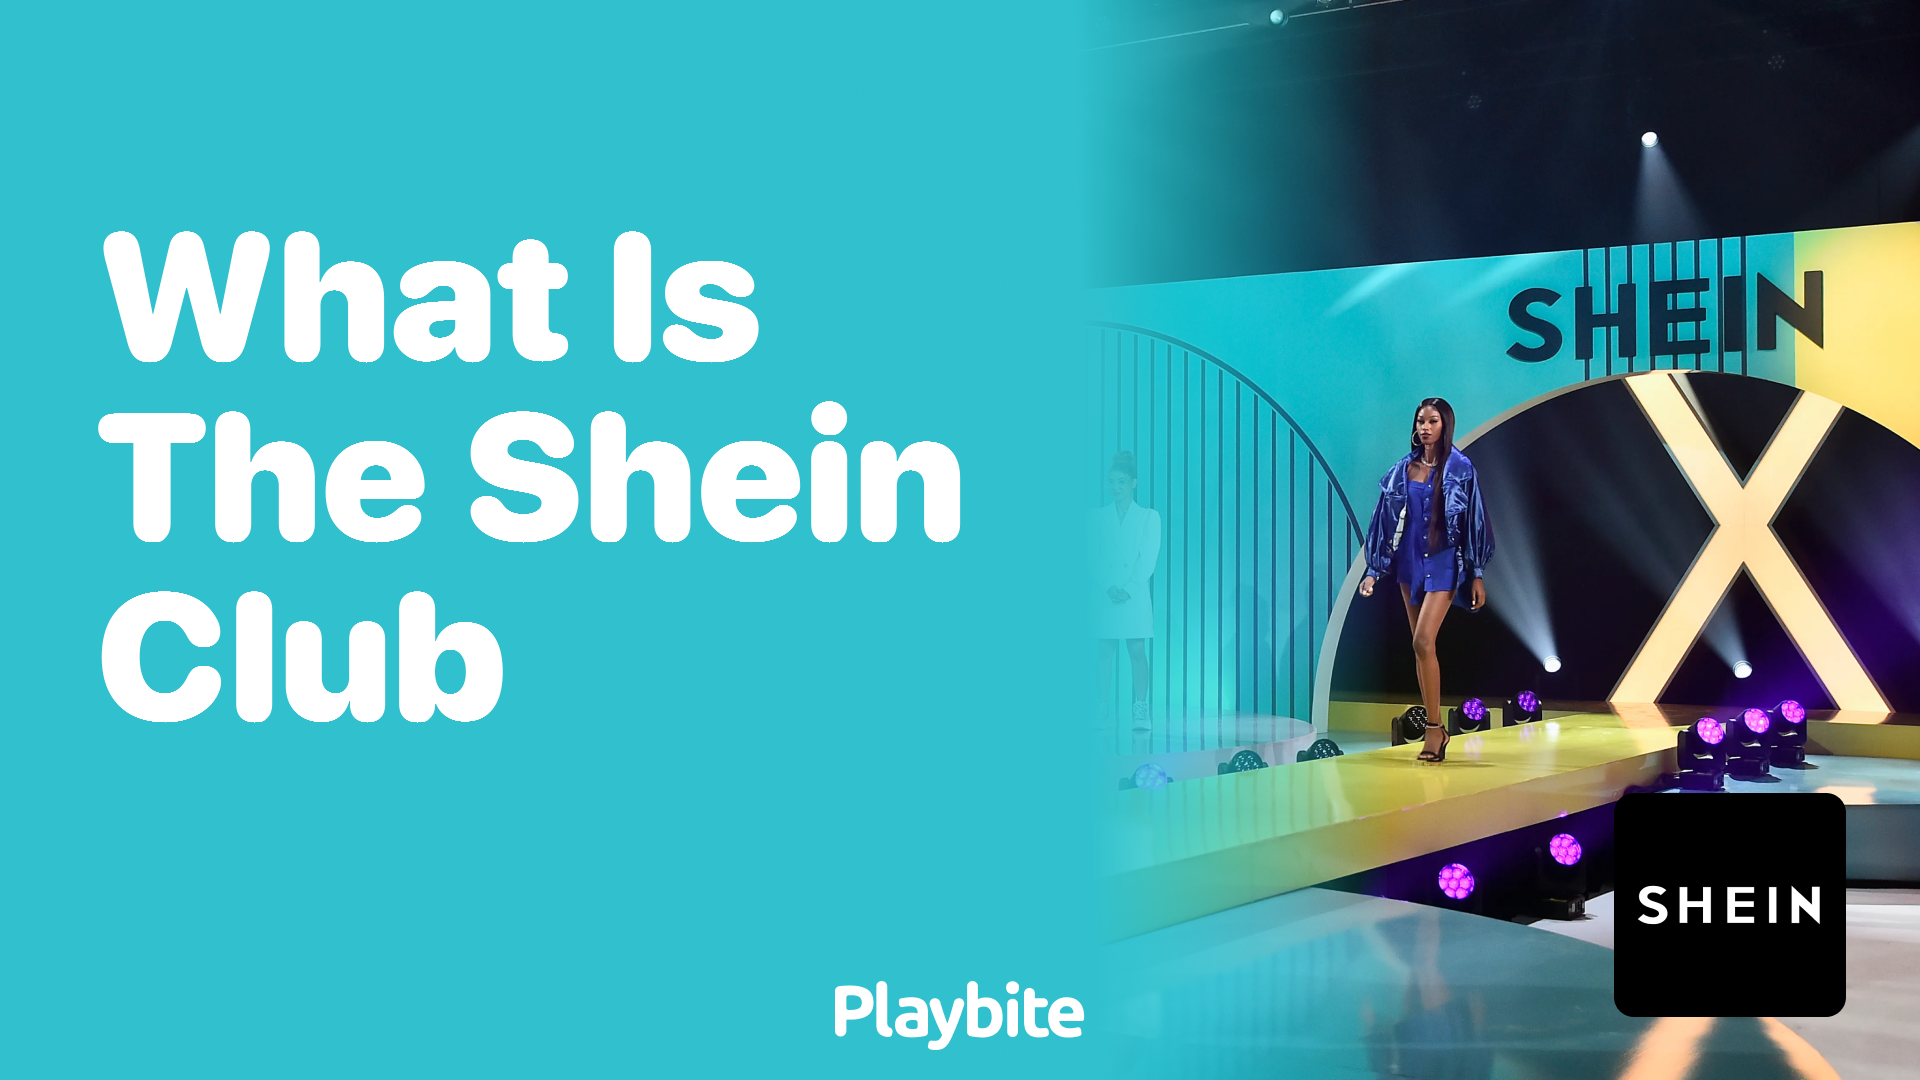 Shein Club - What is Shein Club?